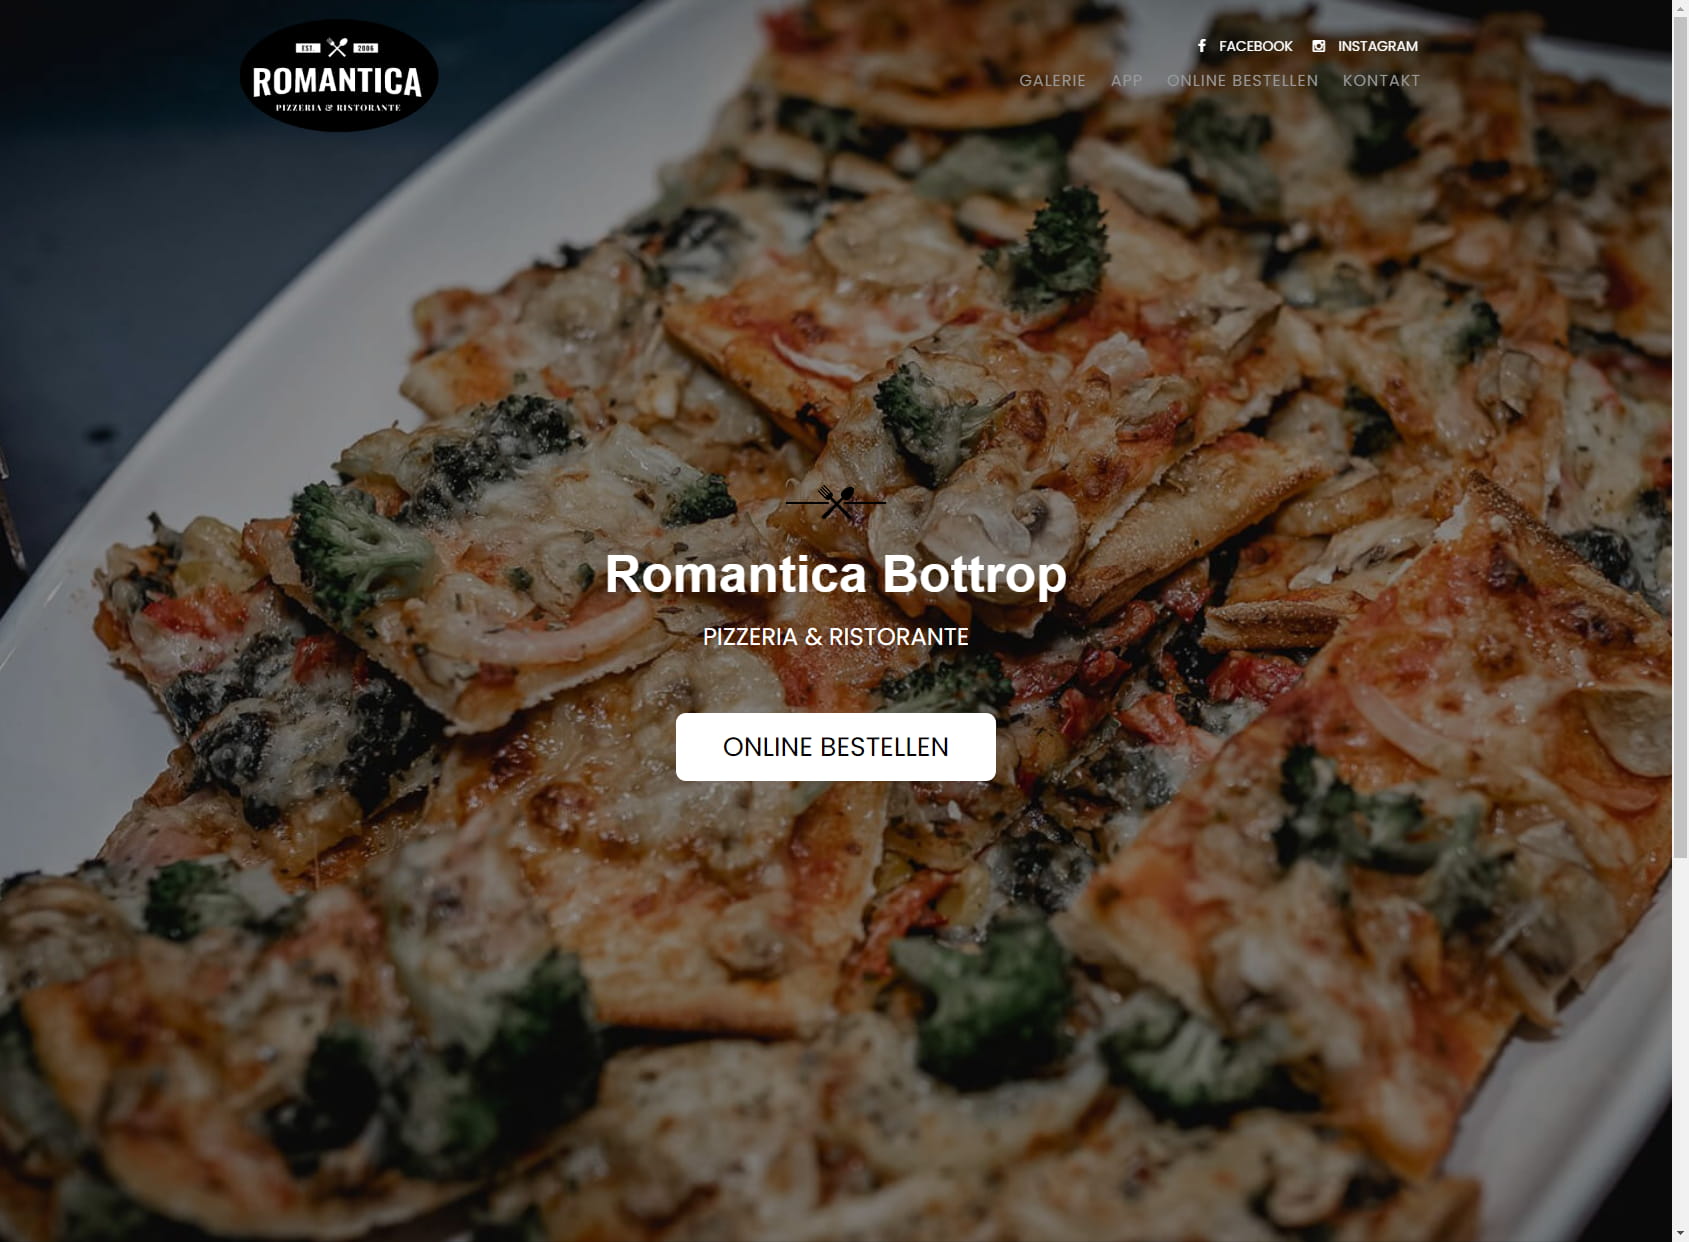 Pizzeria Romantica Bottrop